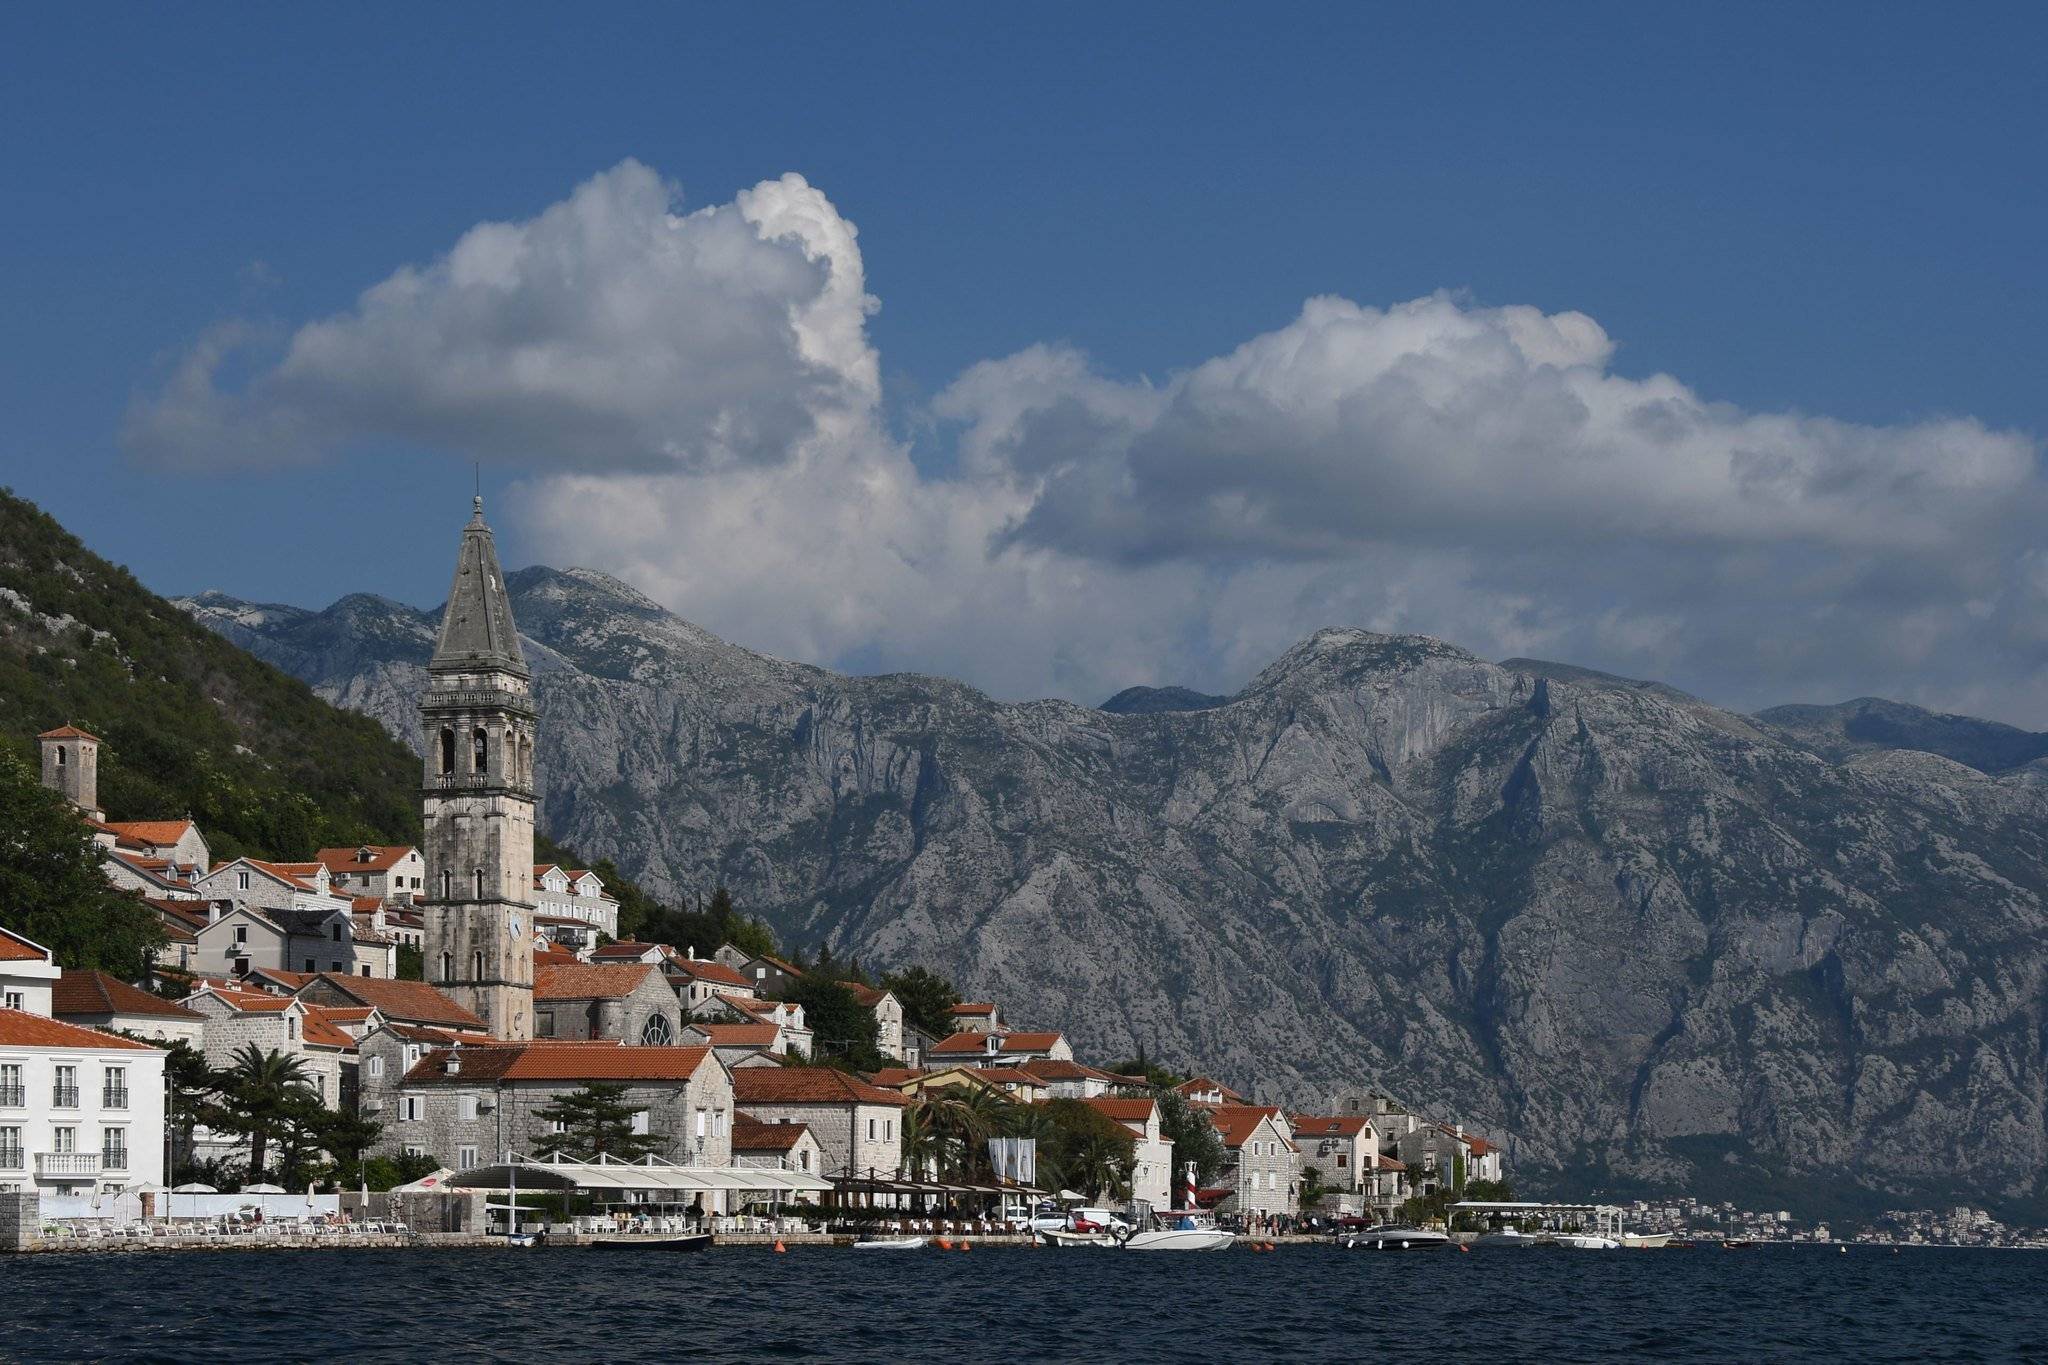 Excursión a la bahía de Kotor, el tesoro oculto de Montenegro